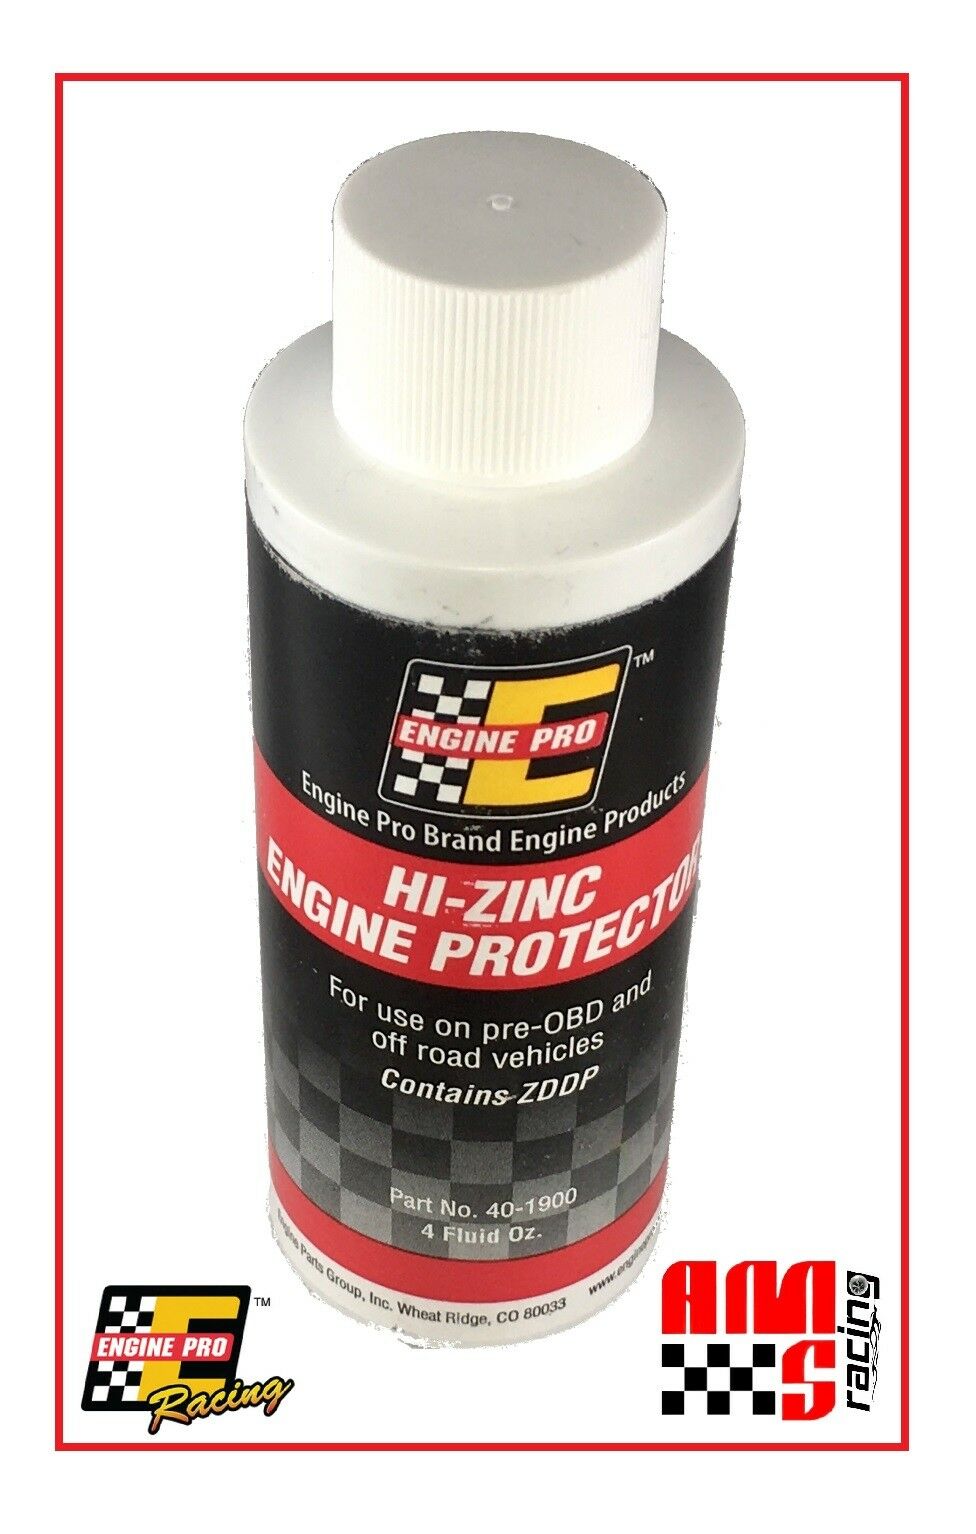 Engine Pro Hi-zinc Zddp Zinc Protective Engine Oil Additive Lube 4 Oz Bottle